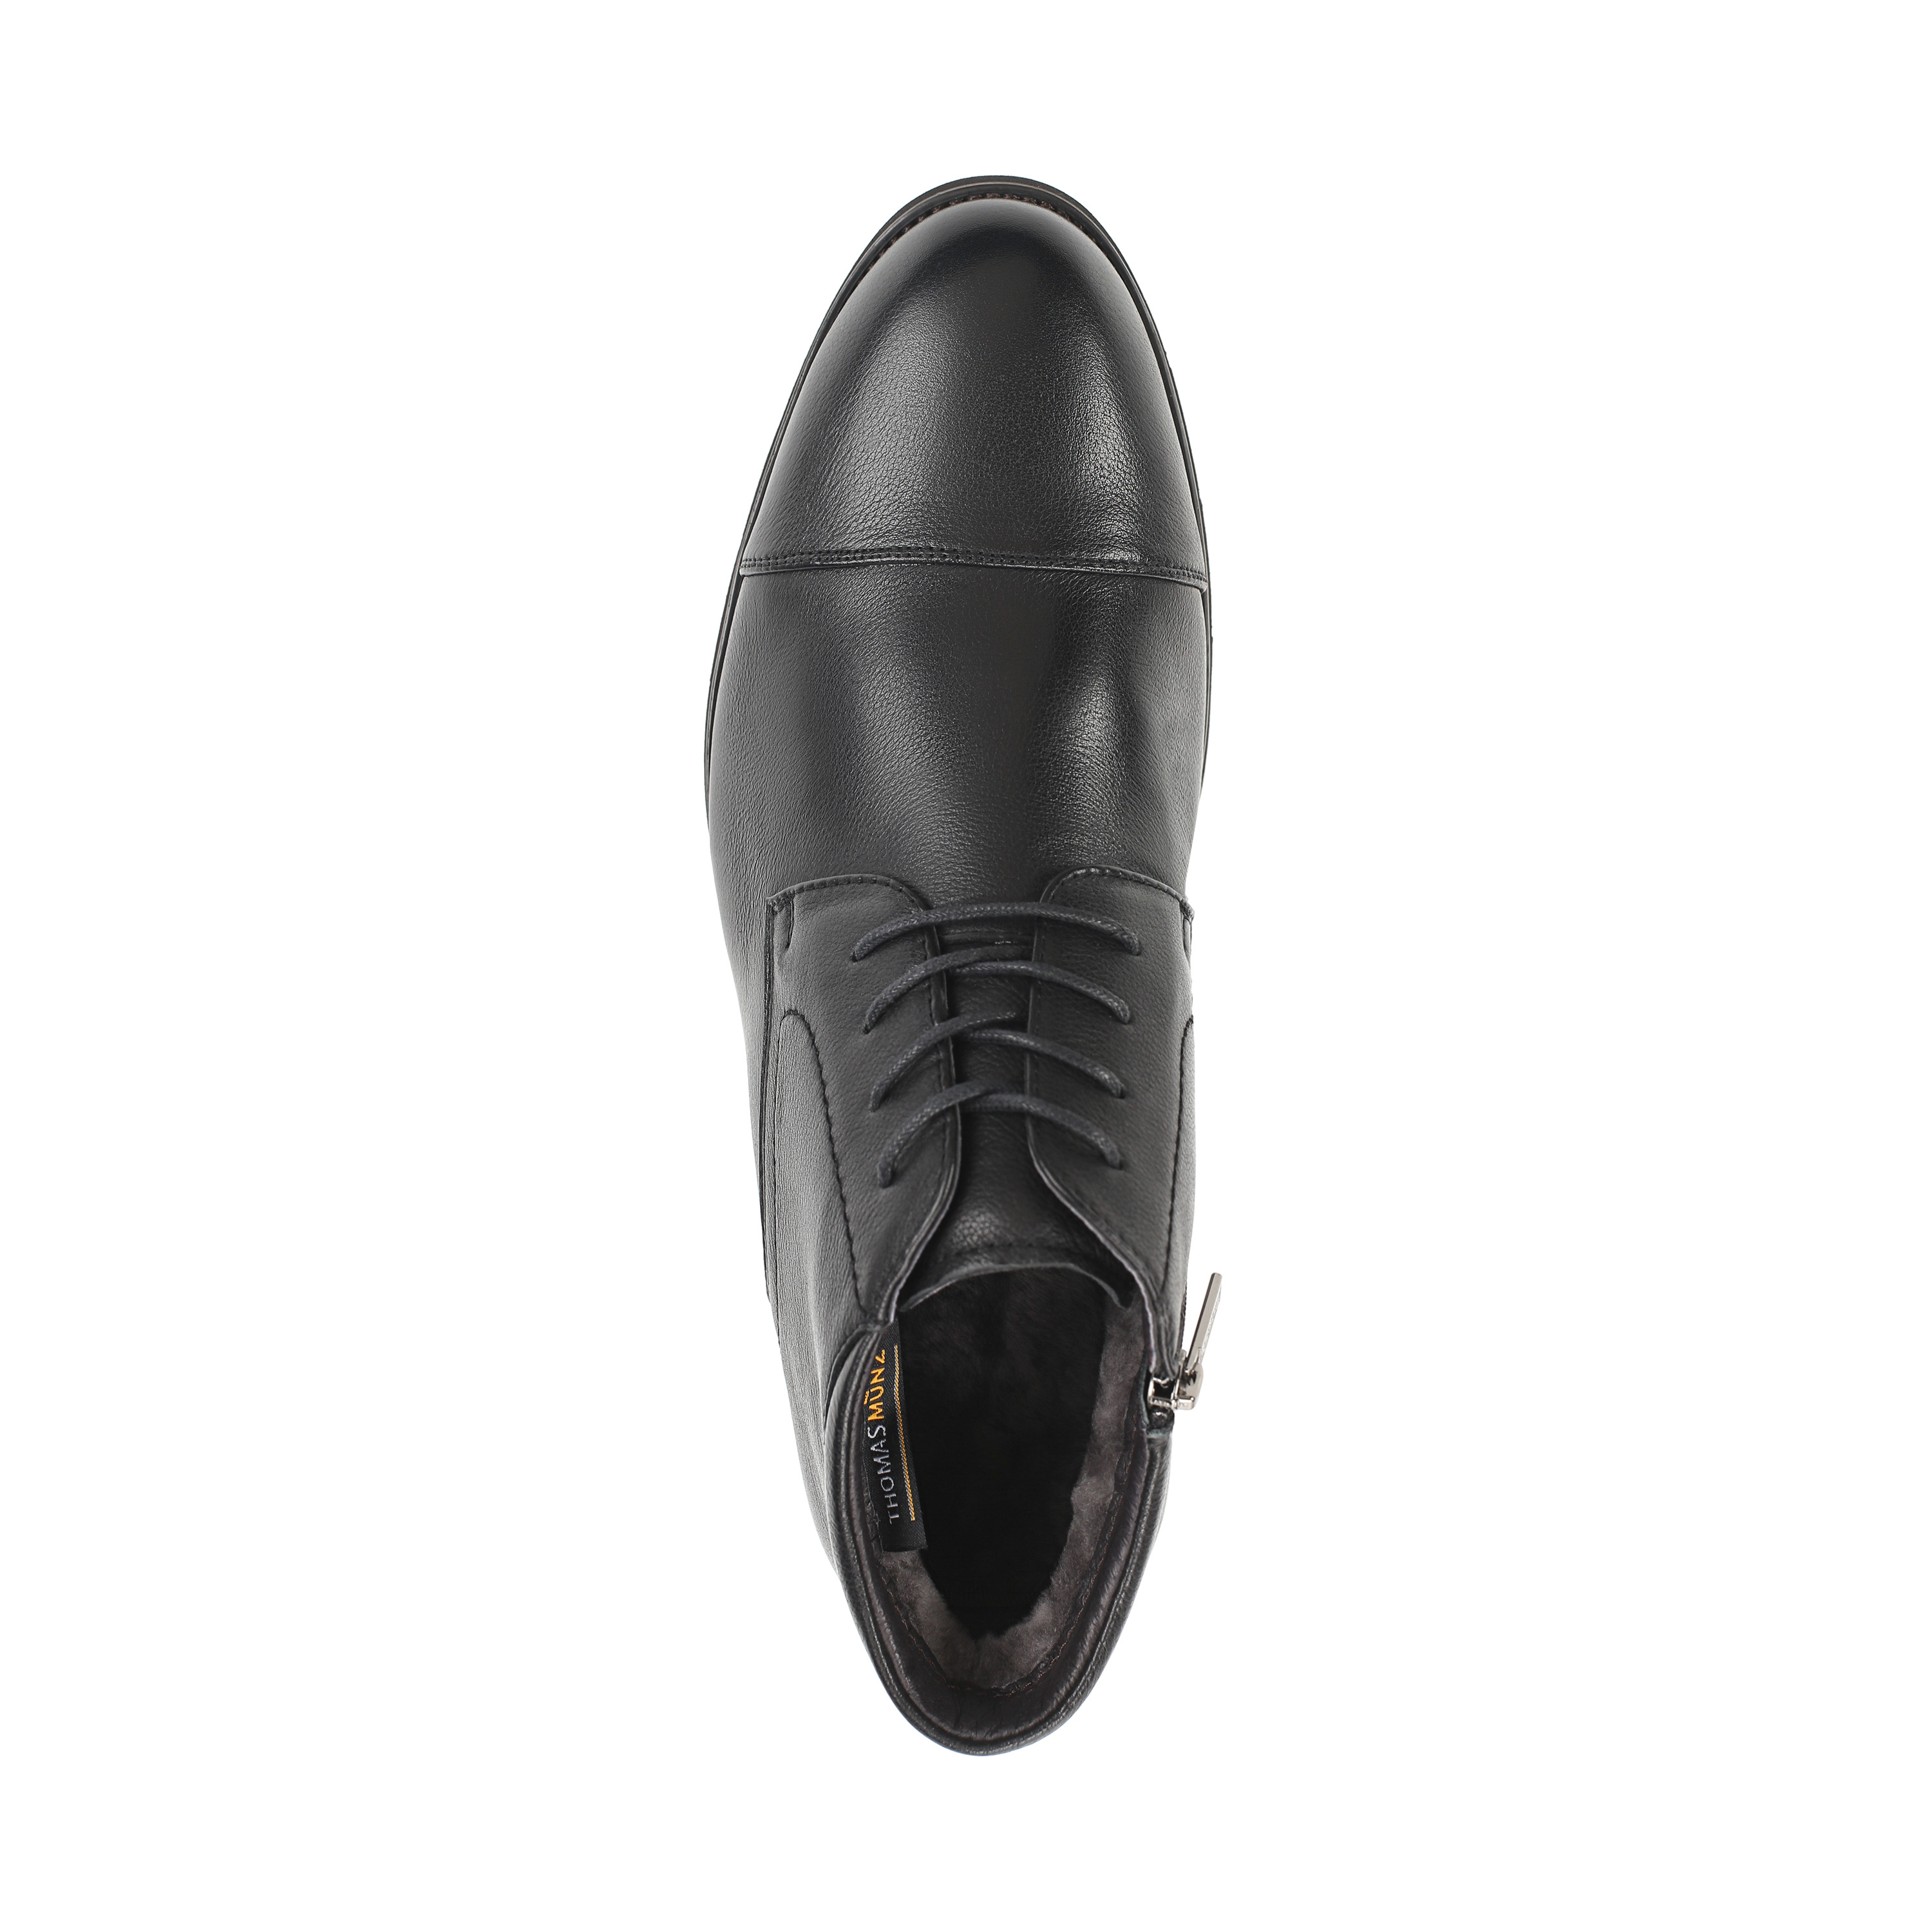 Ботинки Thomas Munz 073-366A-3102 073-366A-3102, цвет черный, размер 45 дерби - фото 5